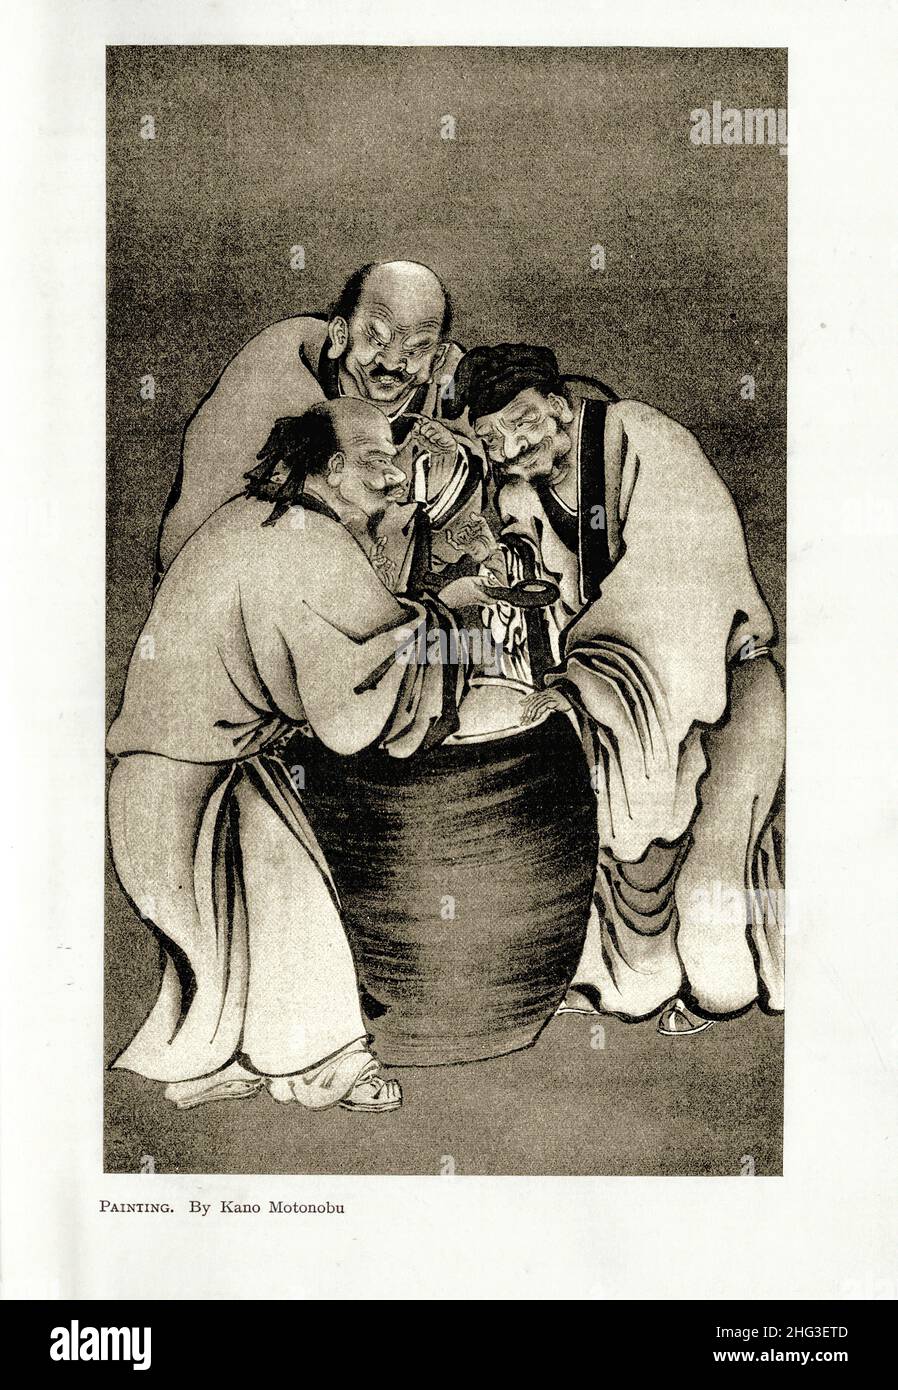 Peinture médiévale japonaise par Kano Motonobu.Reproduction de l'illustration de 1912 Kanō Motonobu (1476–1559) est un peintre et calligraphe japonais Banque D'Images